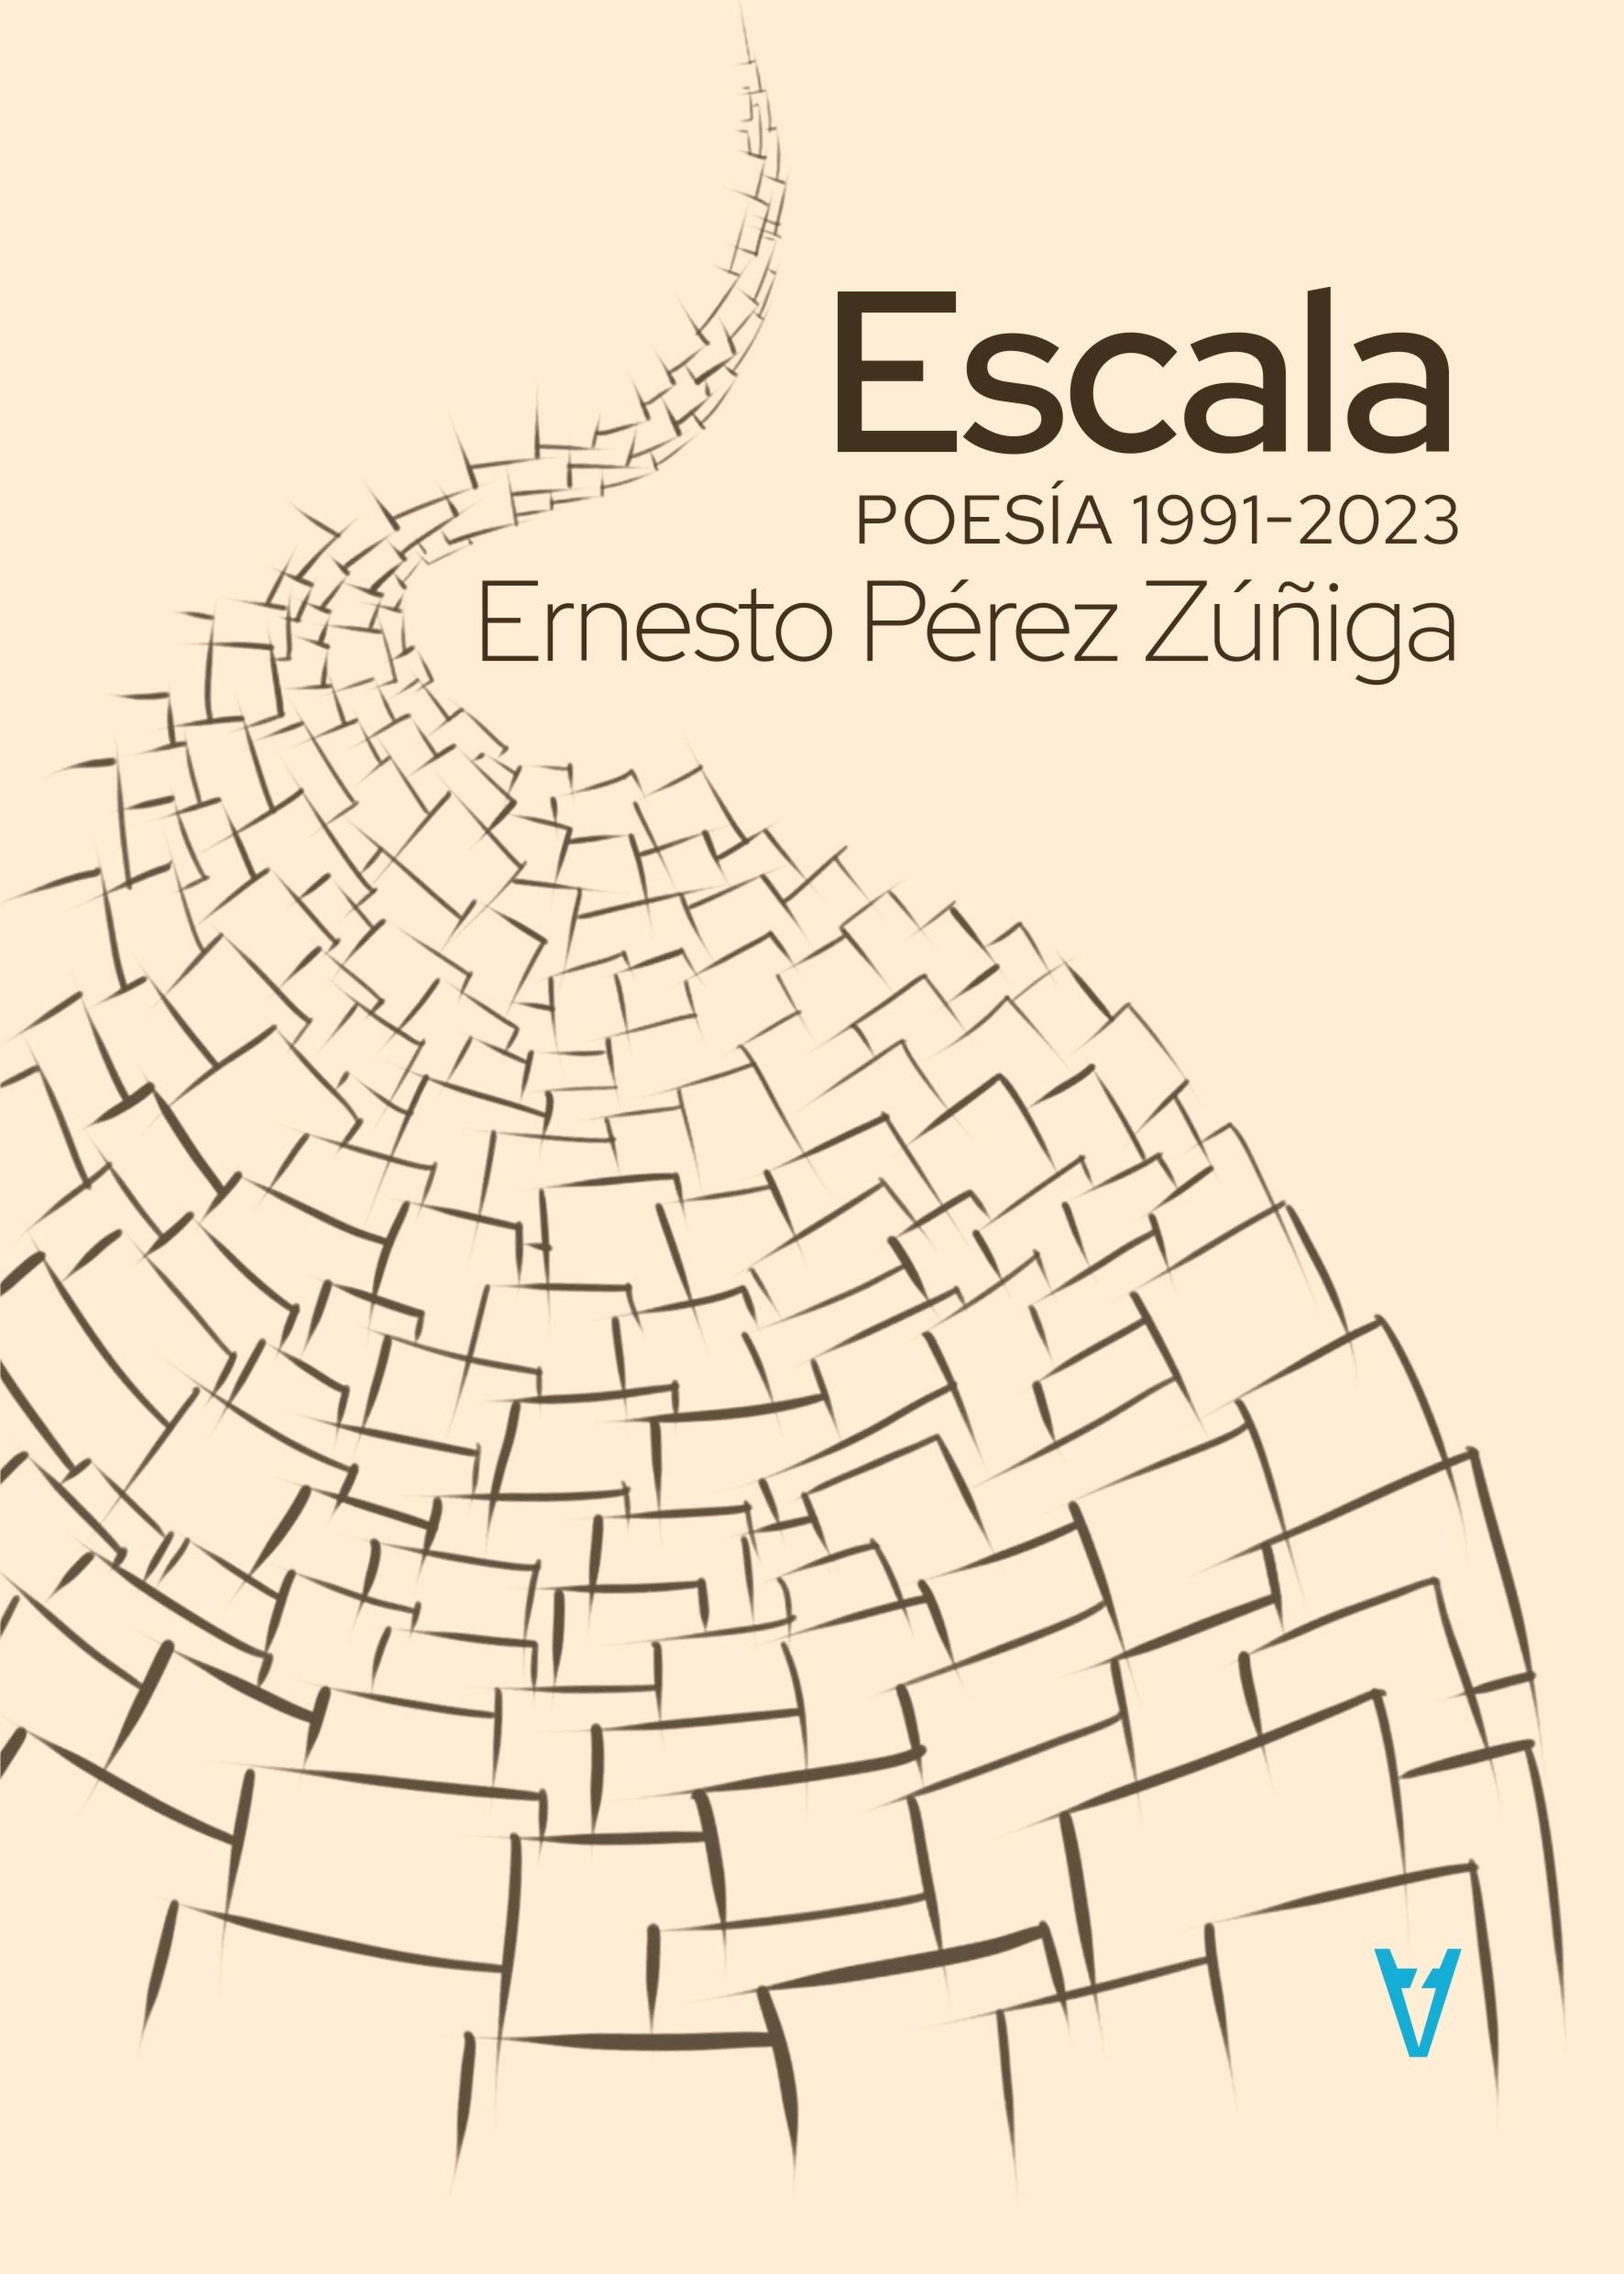 Escala "Poesía 1991-2023". 